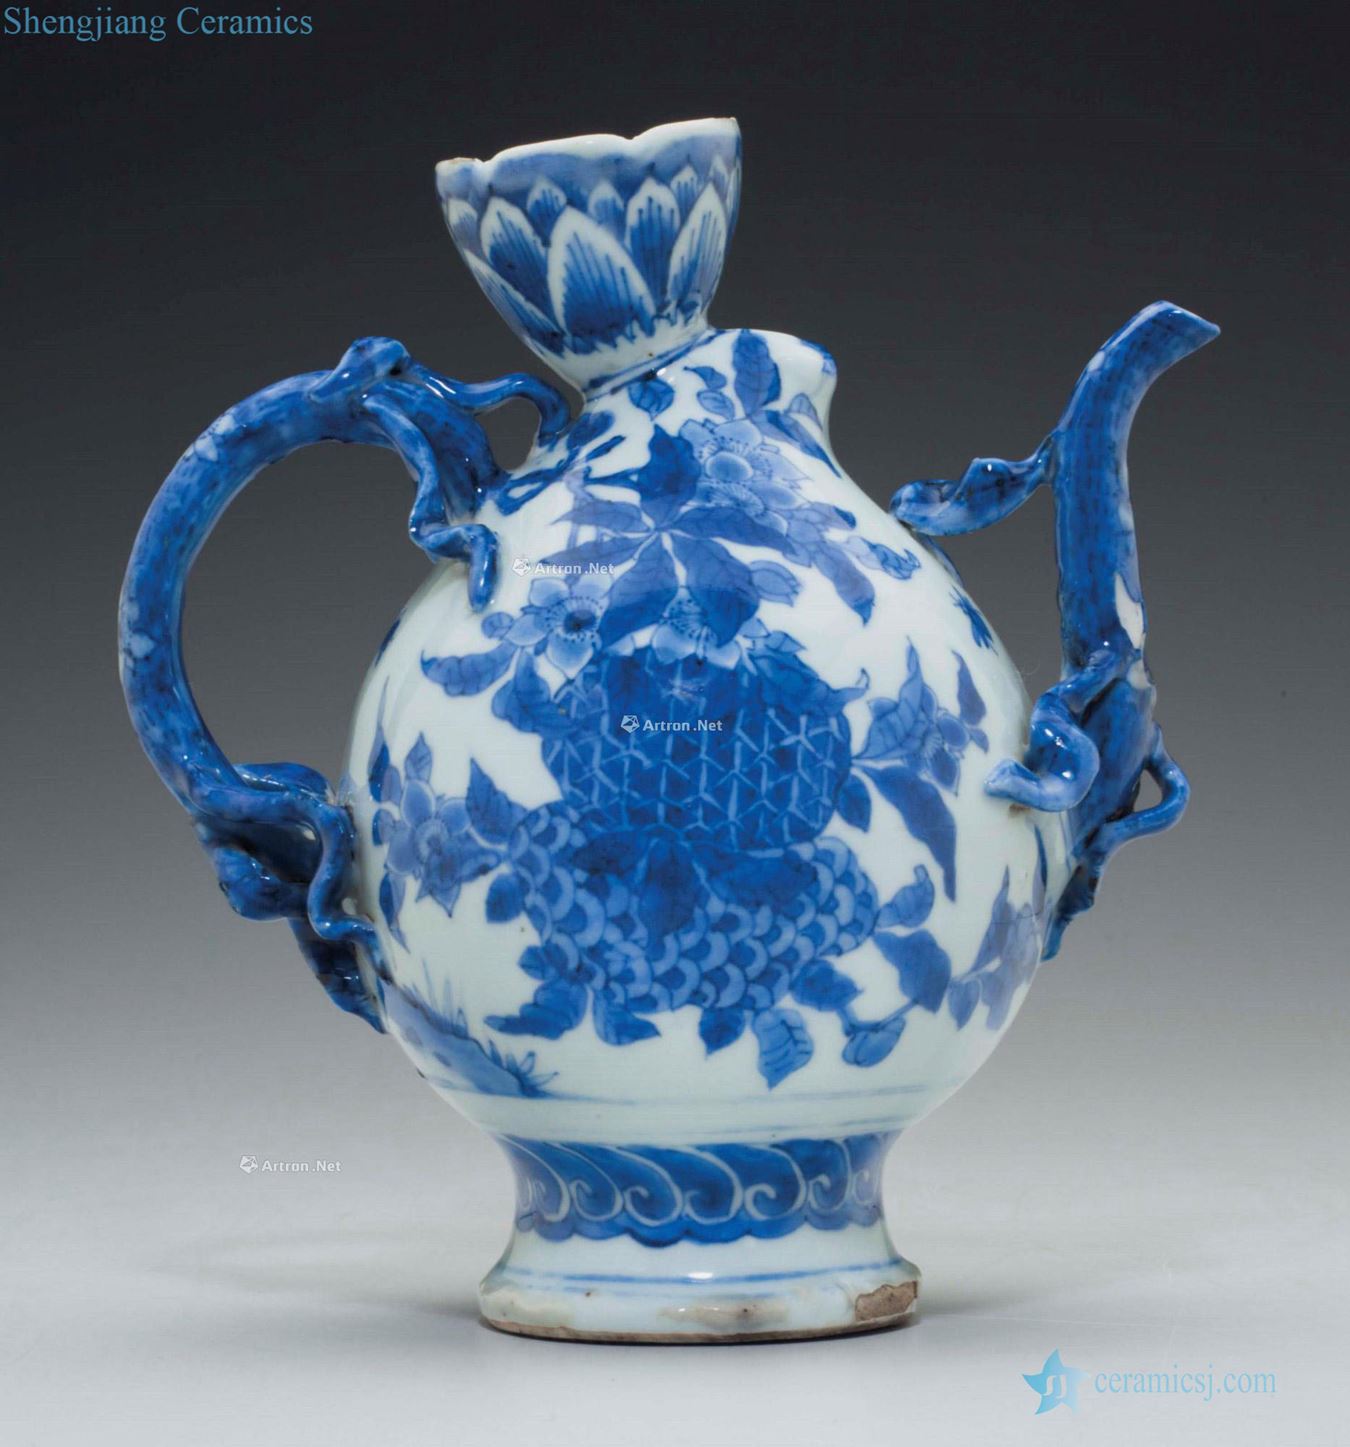 CHONGZHEN PERIOD (1628 ~ 1628) is A RARE BLUE AND WHITE PEACH - FORM EWER